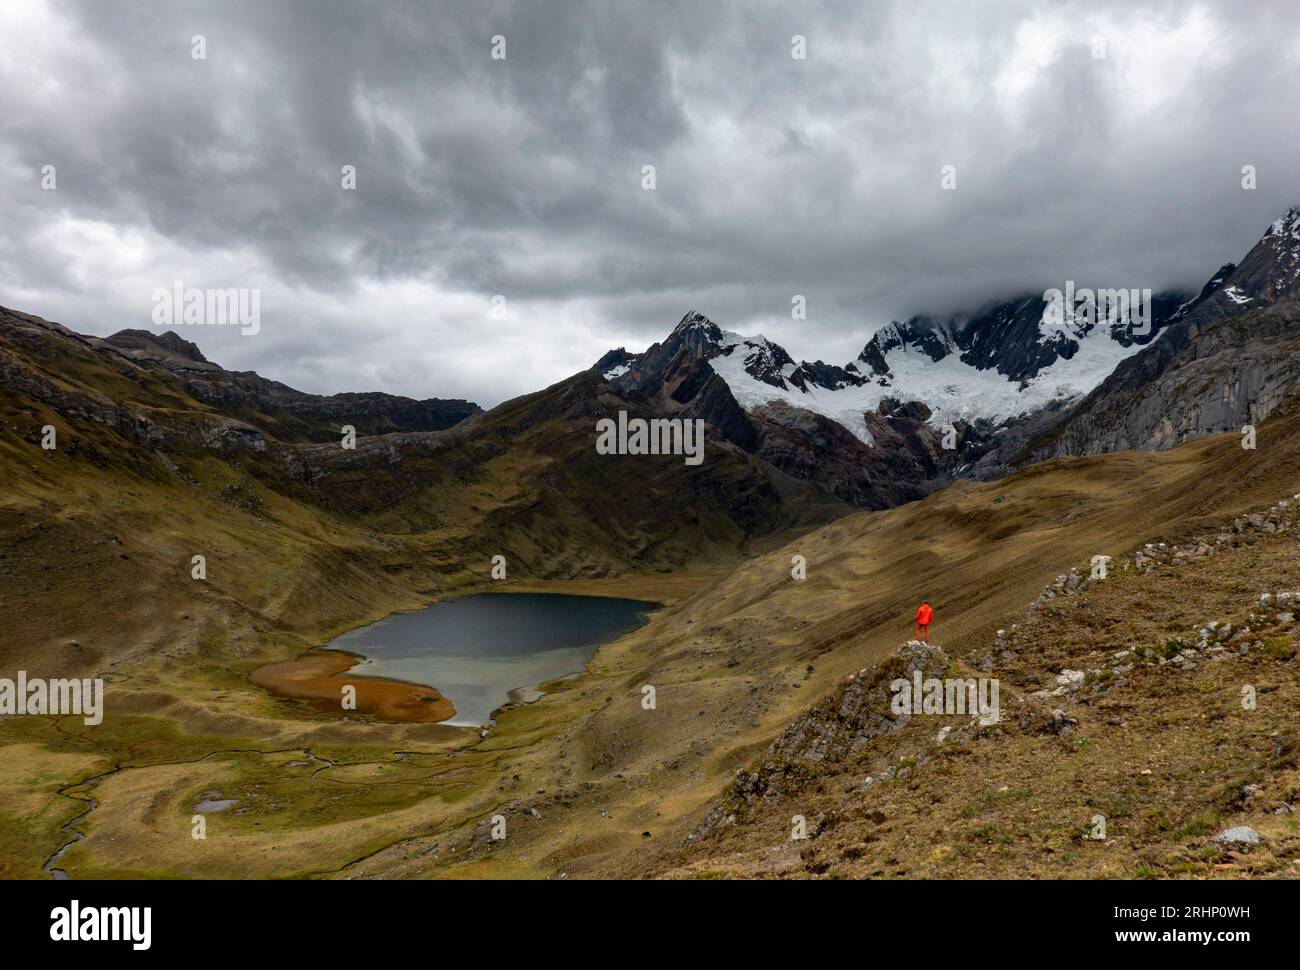 Vue sur le lac Mitucocha, le circuit de randonnée Huayhuash, les montagnes des Andes, Pérou Banque D'Images